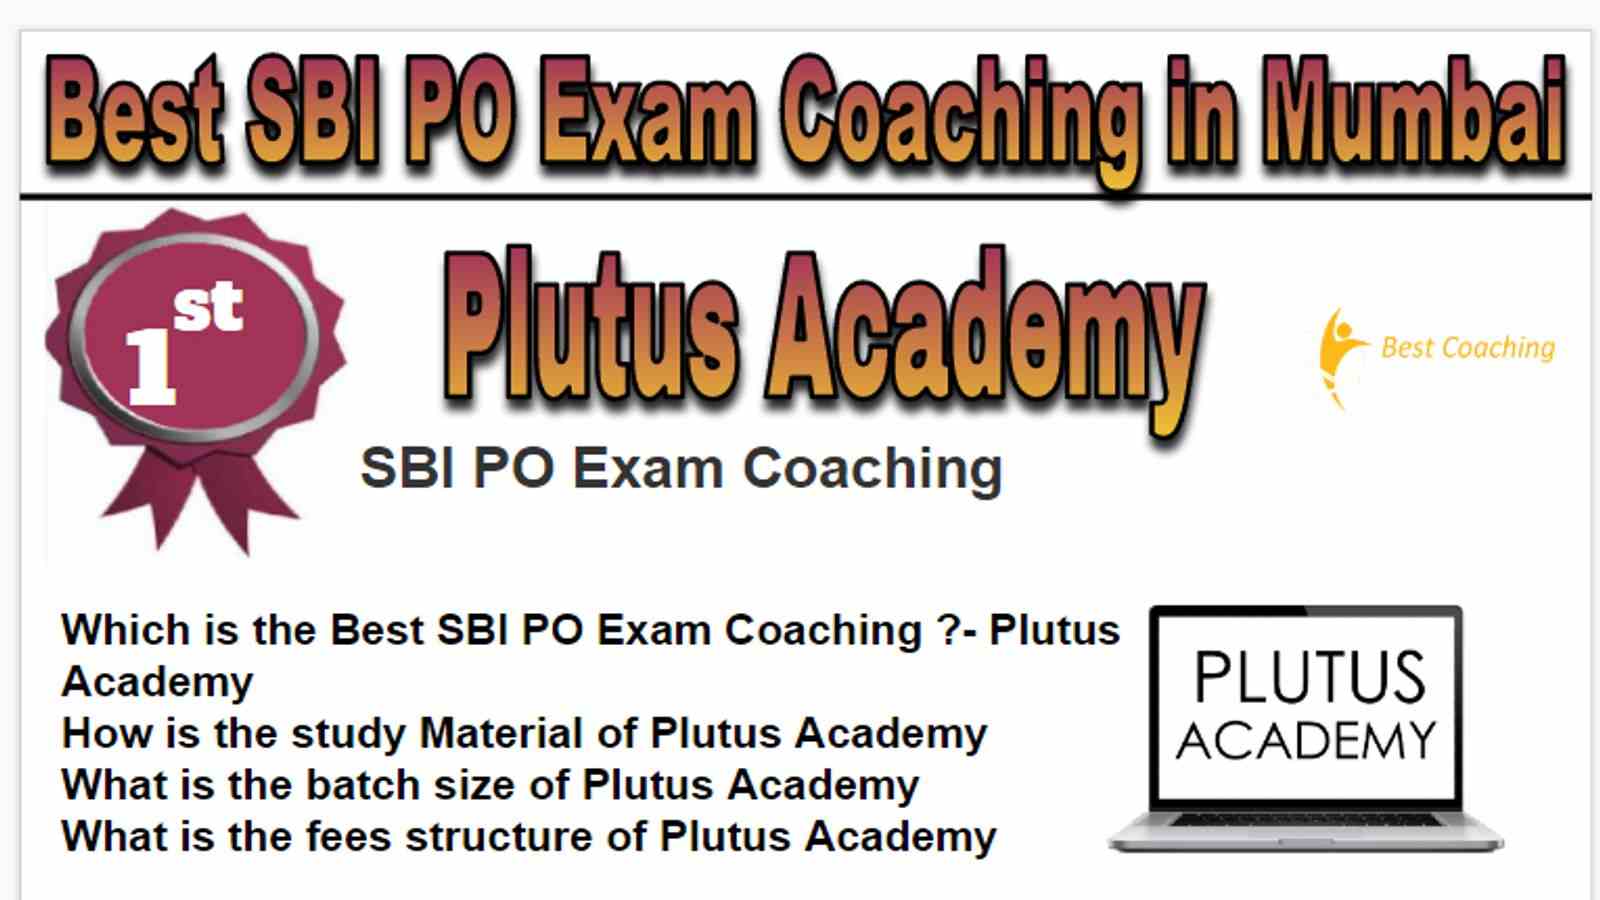 Rank 1 Best SBI PO Exam Coaching in Mumbai